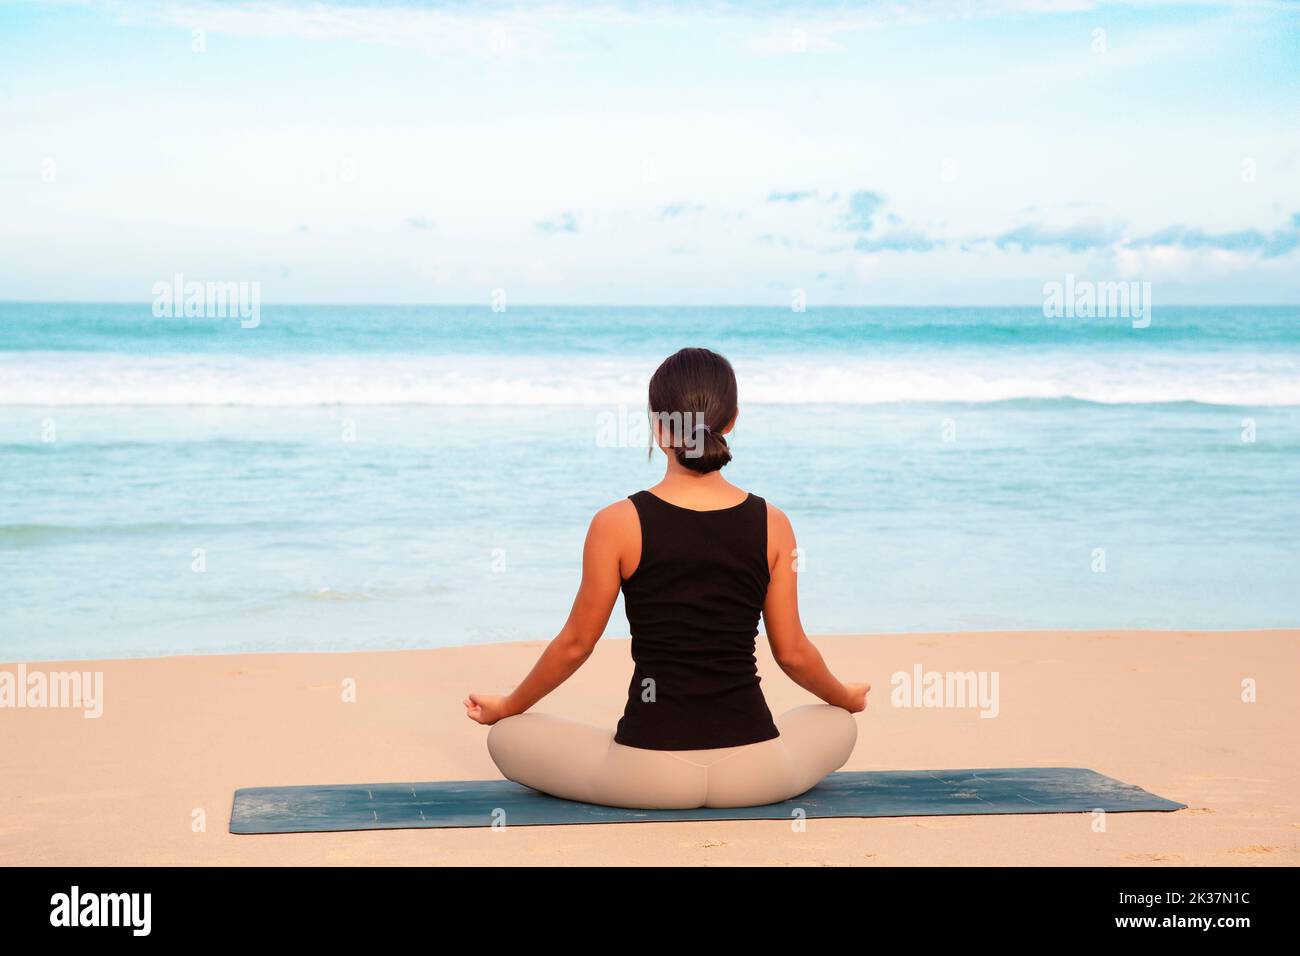 donna che pratica yoga a riva del mare di spiaggia tropicale, giovane donna meditare in spiaggia fare esercizi di yoga Foto Stock